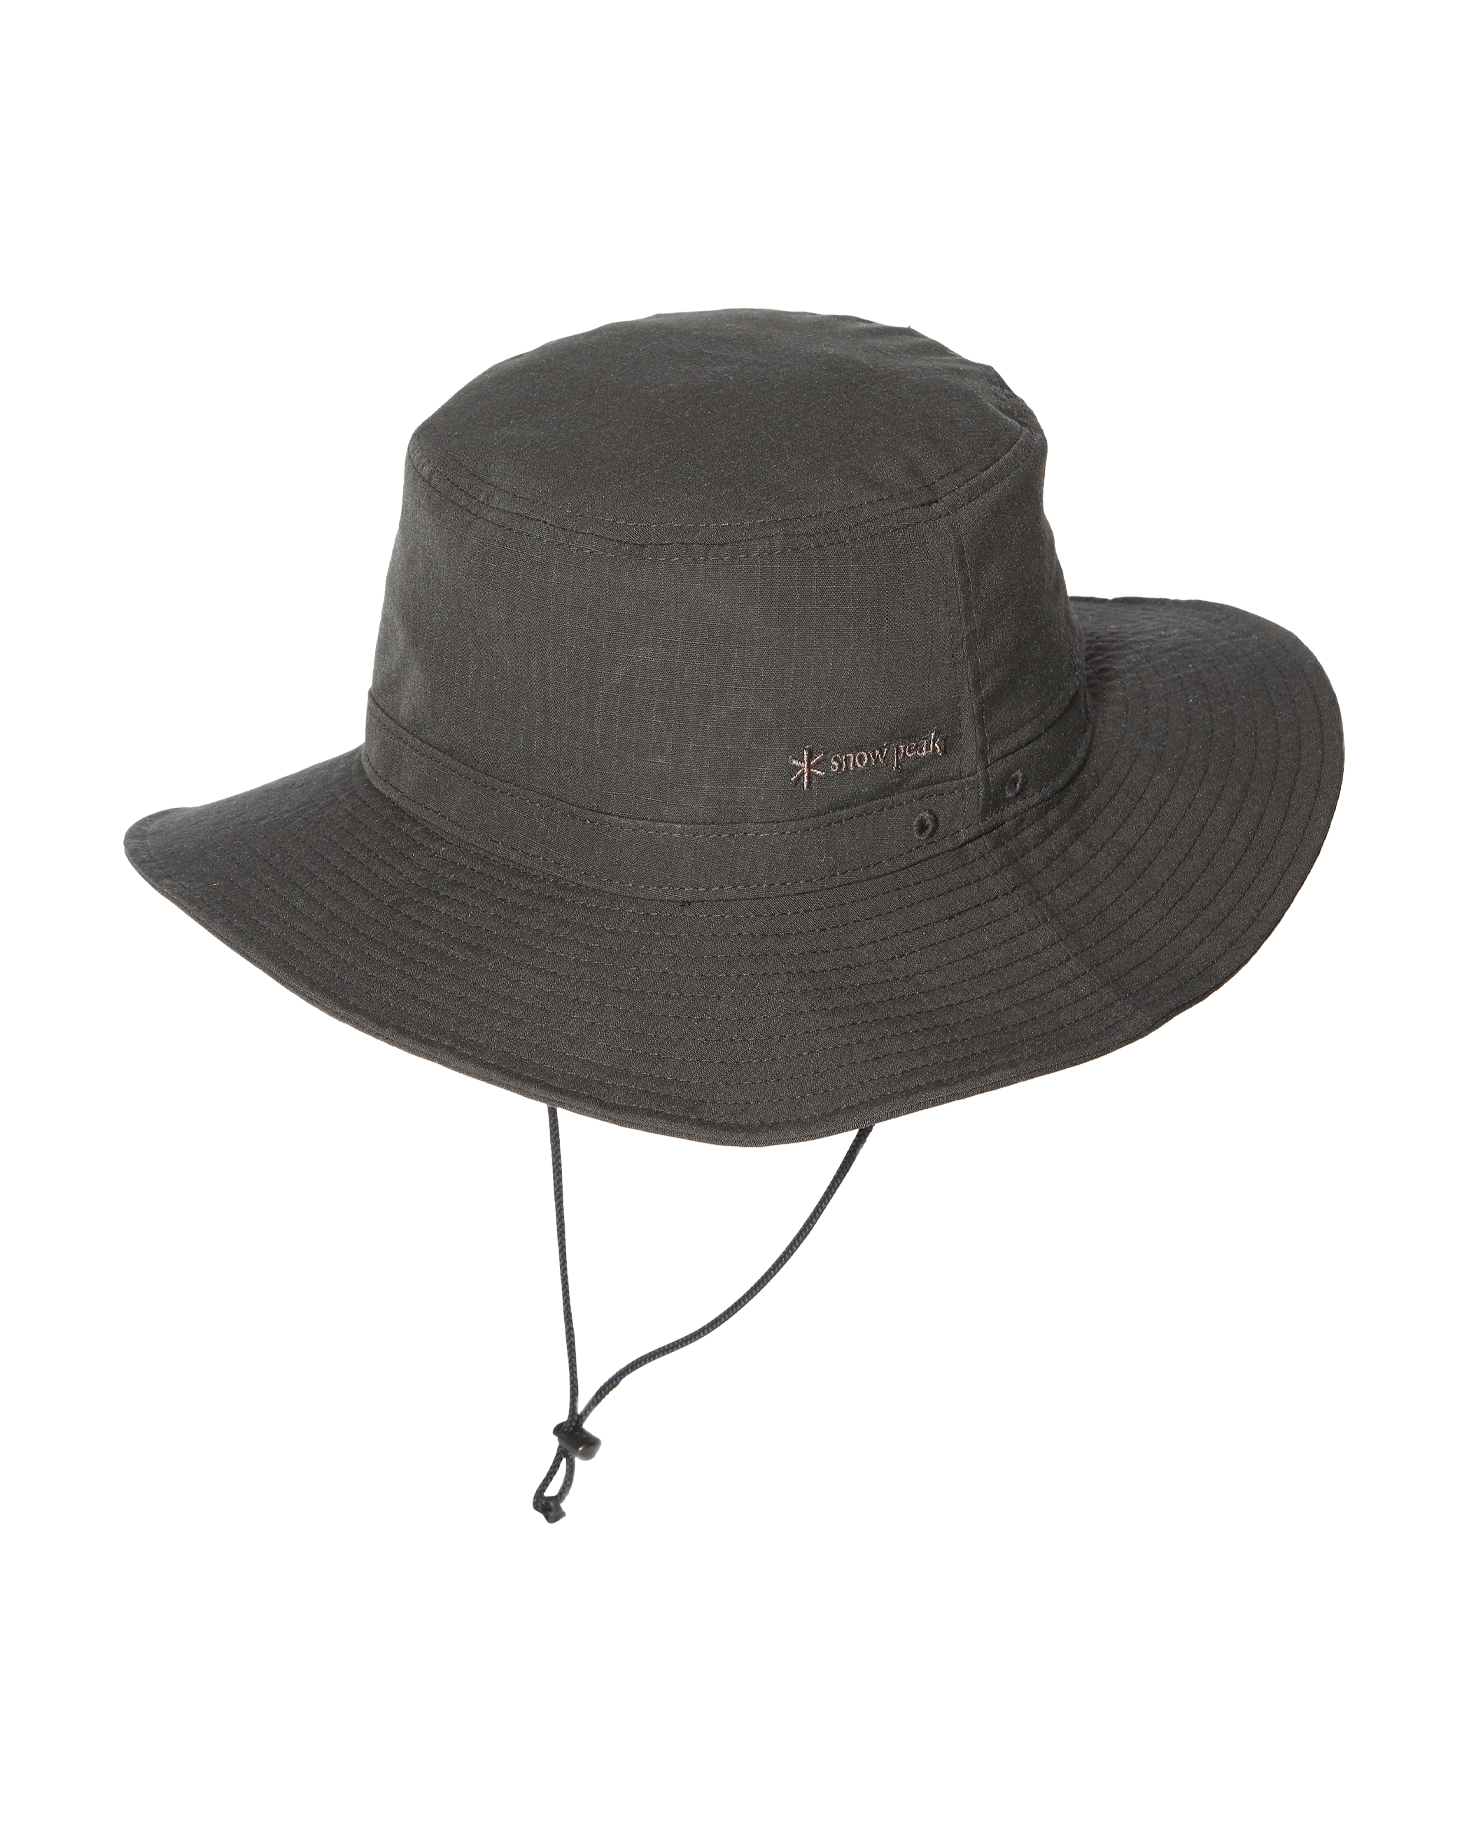 激安な スノーピーク TAKIBI Canvas Hat One Black【新品】 ハット 